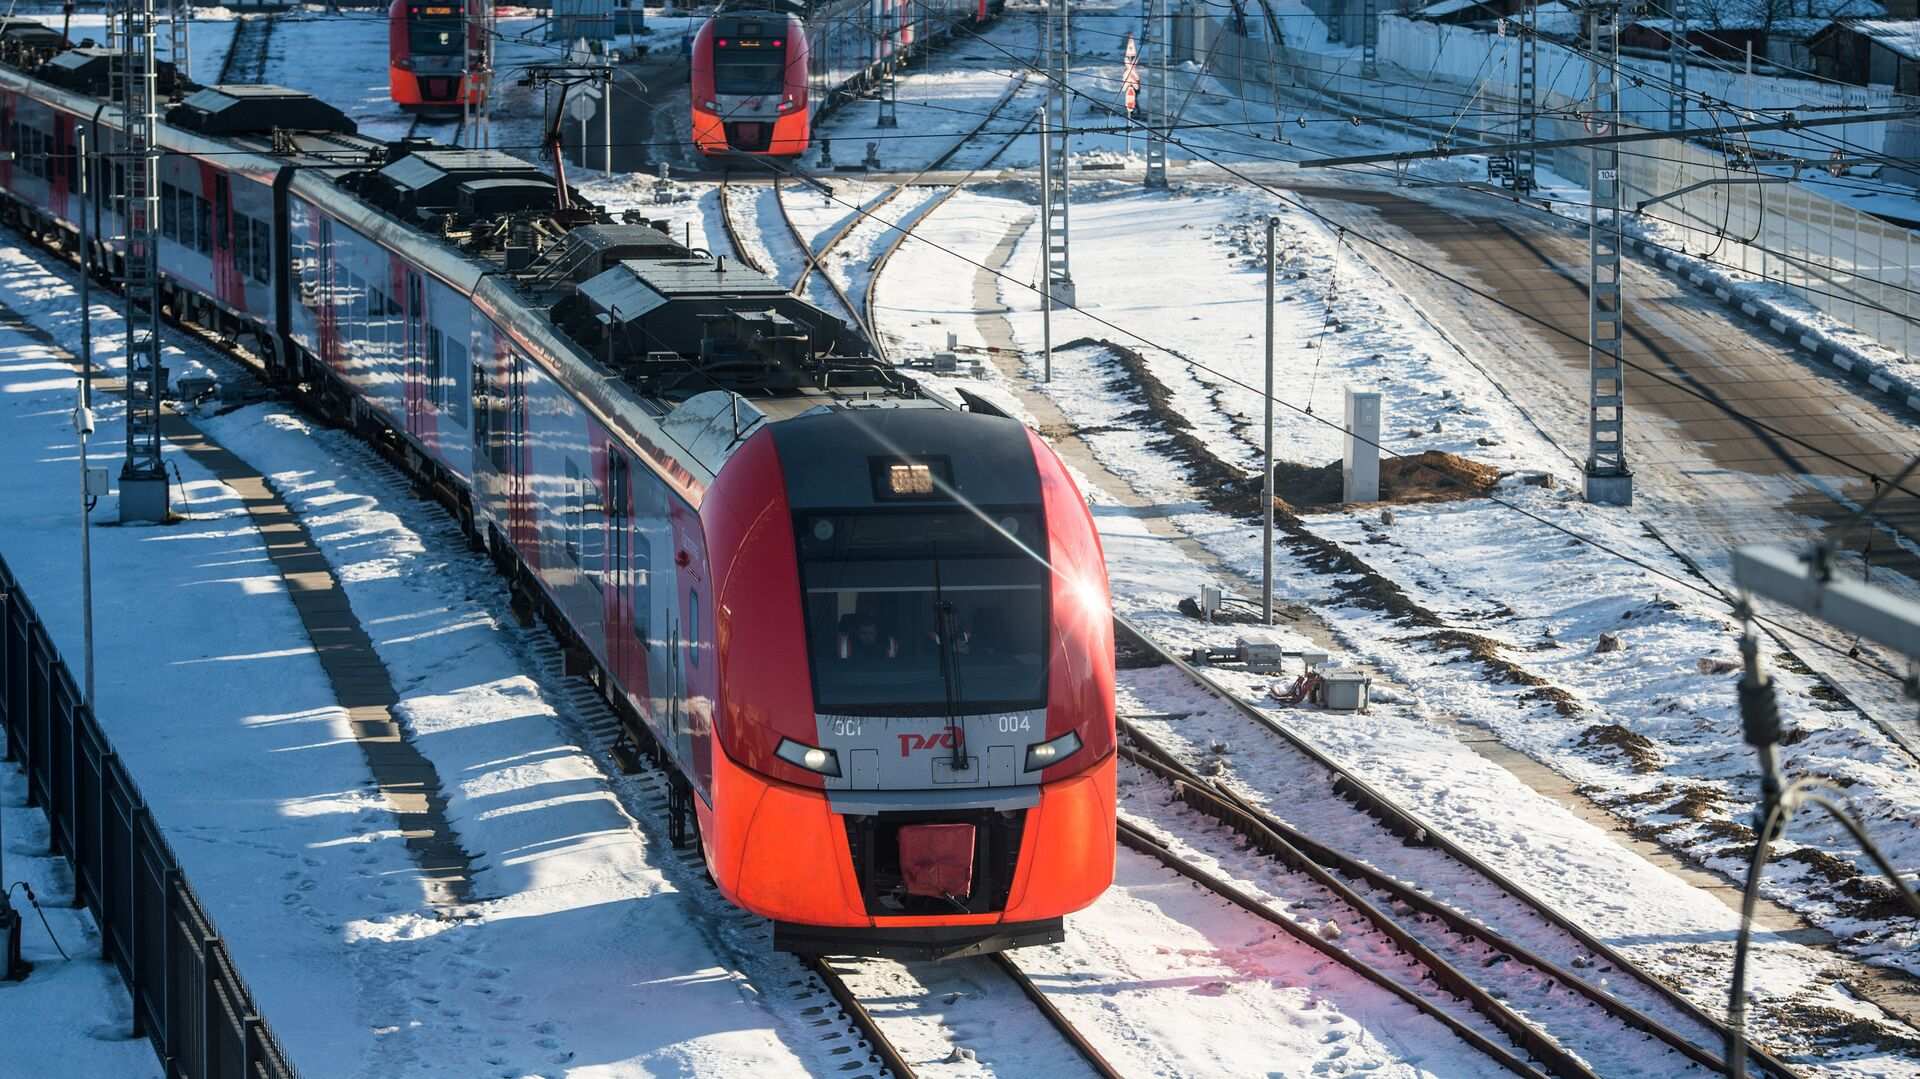 Беспилотный поезд будет запущен в России через два года, — глава РЖД | Русская весна